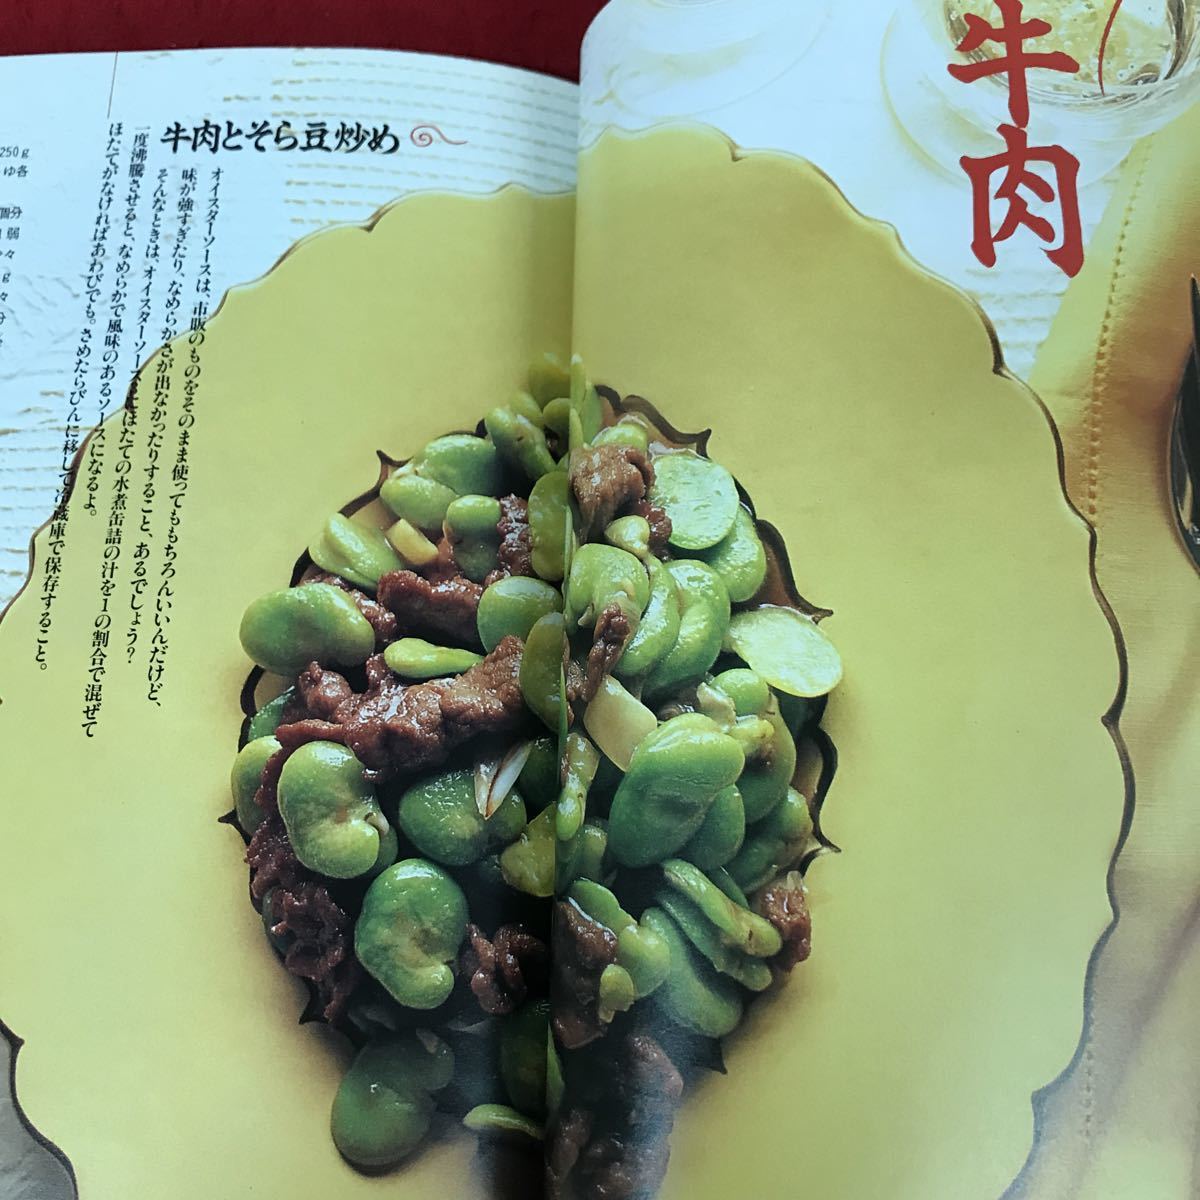 i-403 ※13 おはよう奥さん 1995年8月号付録 周富輝の元気が出る中華 出版社不明 中華料理レシピ_画像5